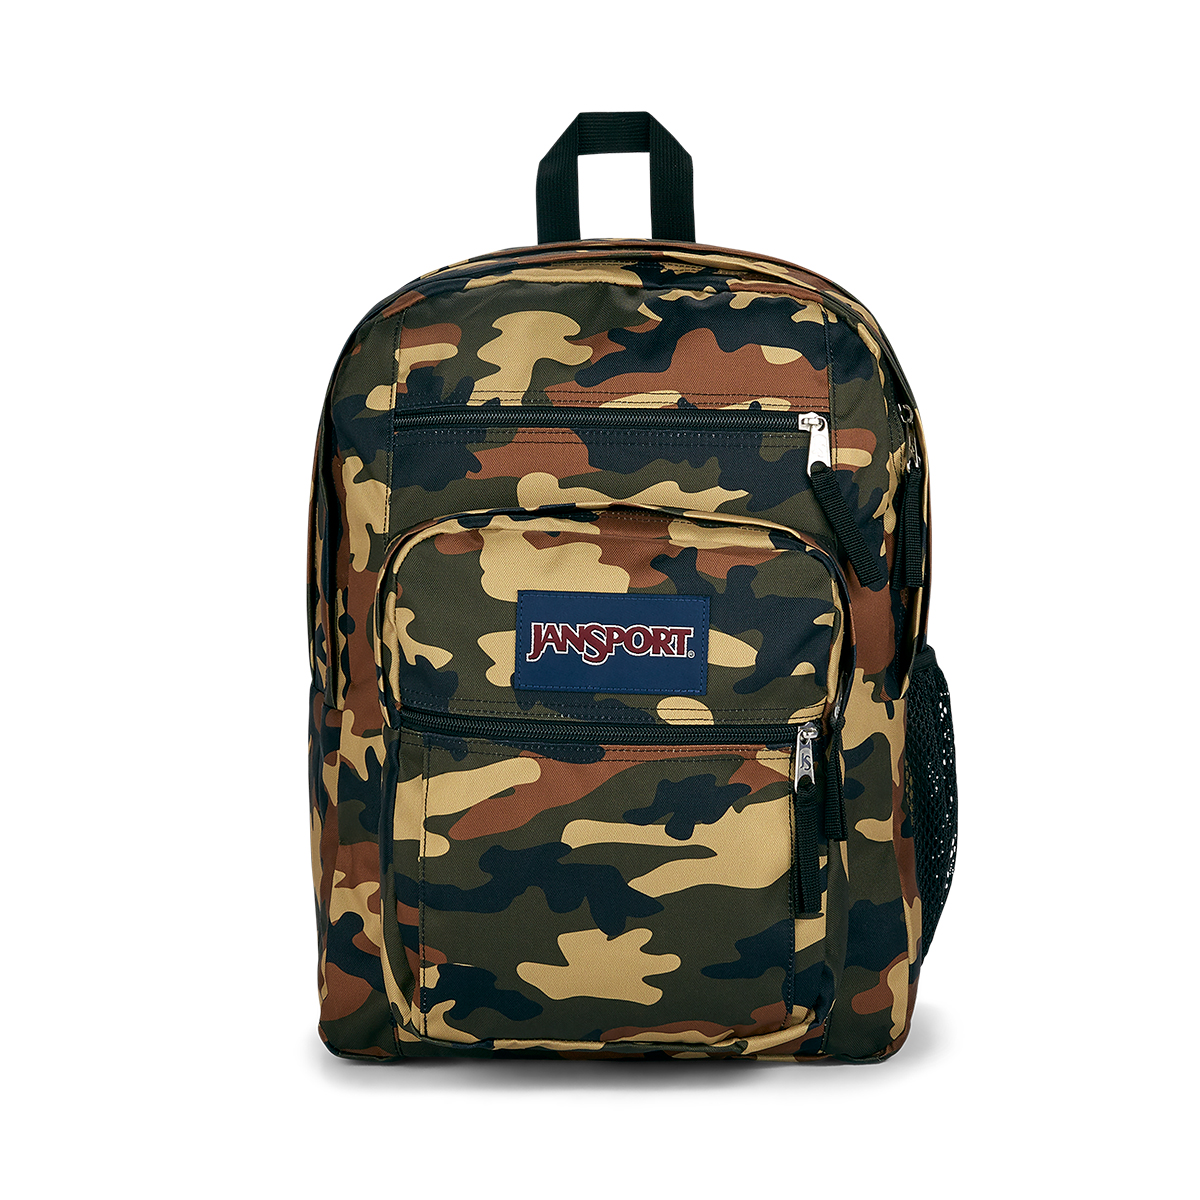 JanSport(R) Buckshot Backpack - Camo